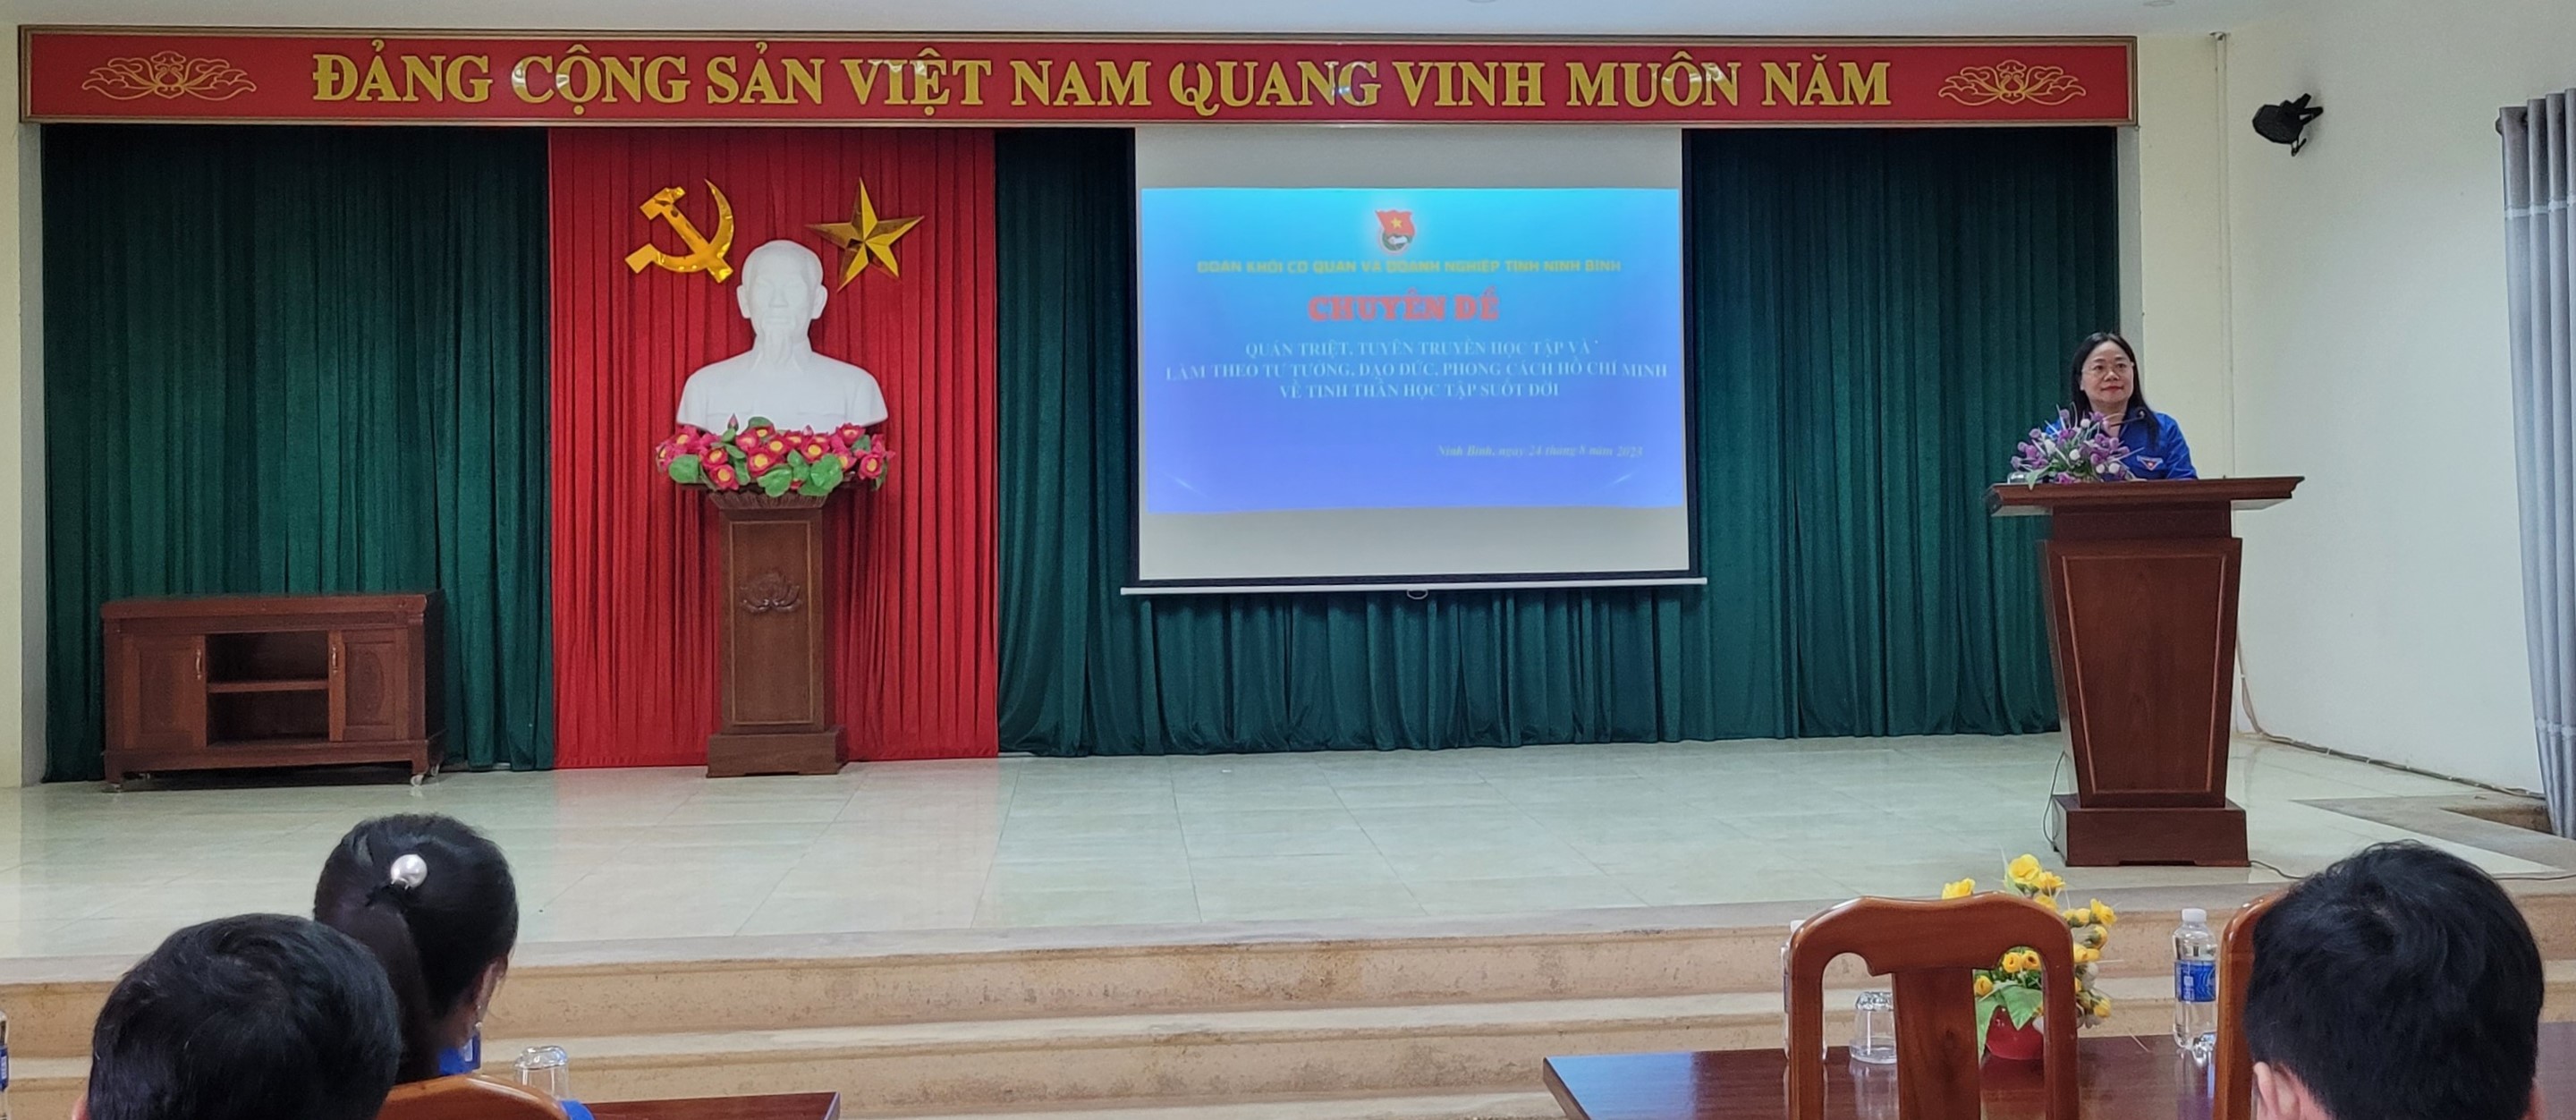 Đoàn khối tổ chức Hội nghị học tập, quán triệt và triển khai hai chuyên đề học tập và làm theo tư tưởng, đạo đức phong cách Hồ Chí Minh trong cán bộ đoàn, đoàn viên, thanh niên năm 2023